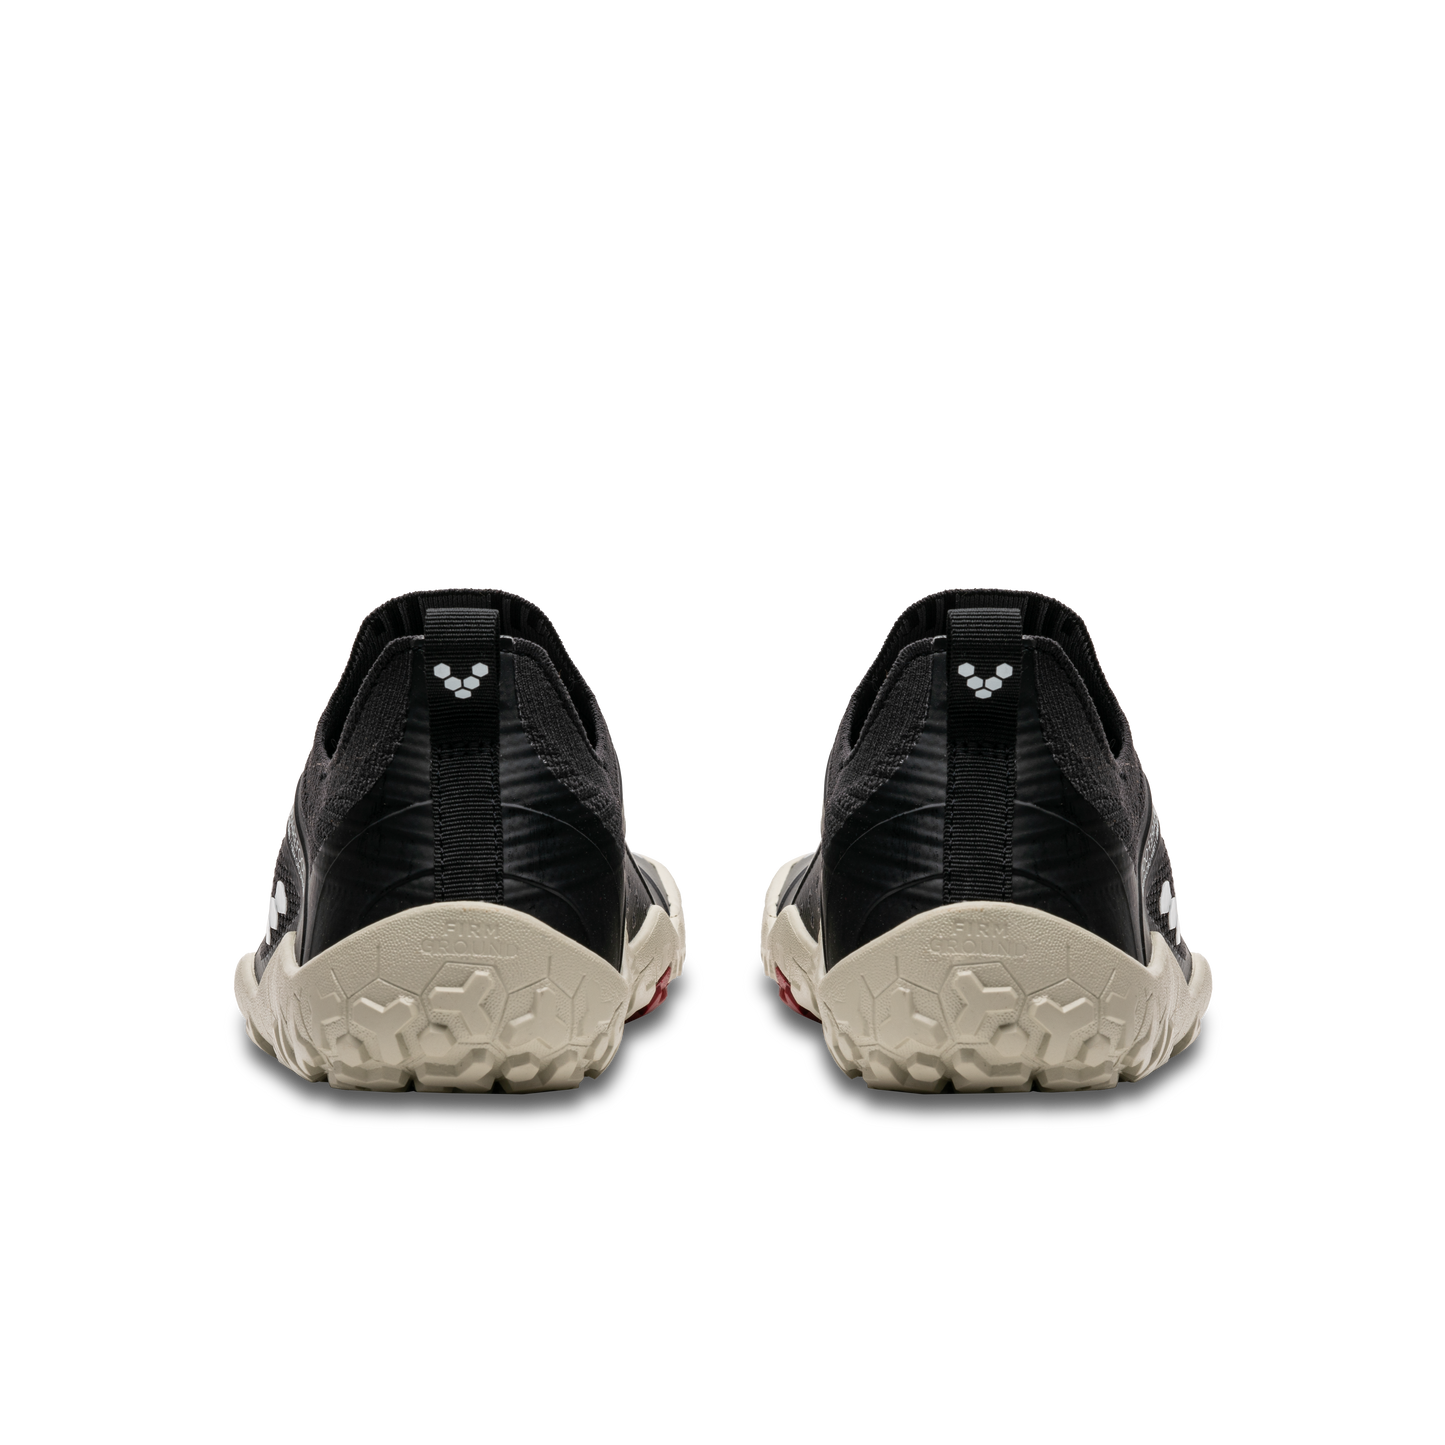 Vivobarefoot Primus Trail Knit FG Mens bagfra i varianten Obsidian / Limestone. Skoene er specielt designet til trail og barfodsløb med økovenlige materialer og skridsikker sål.